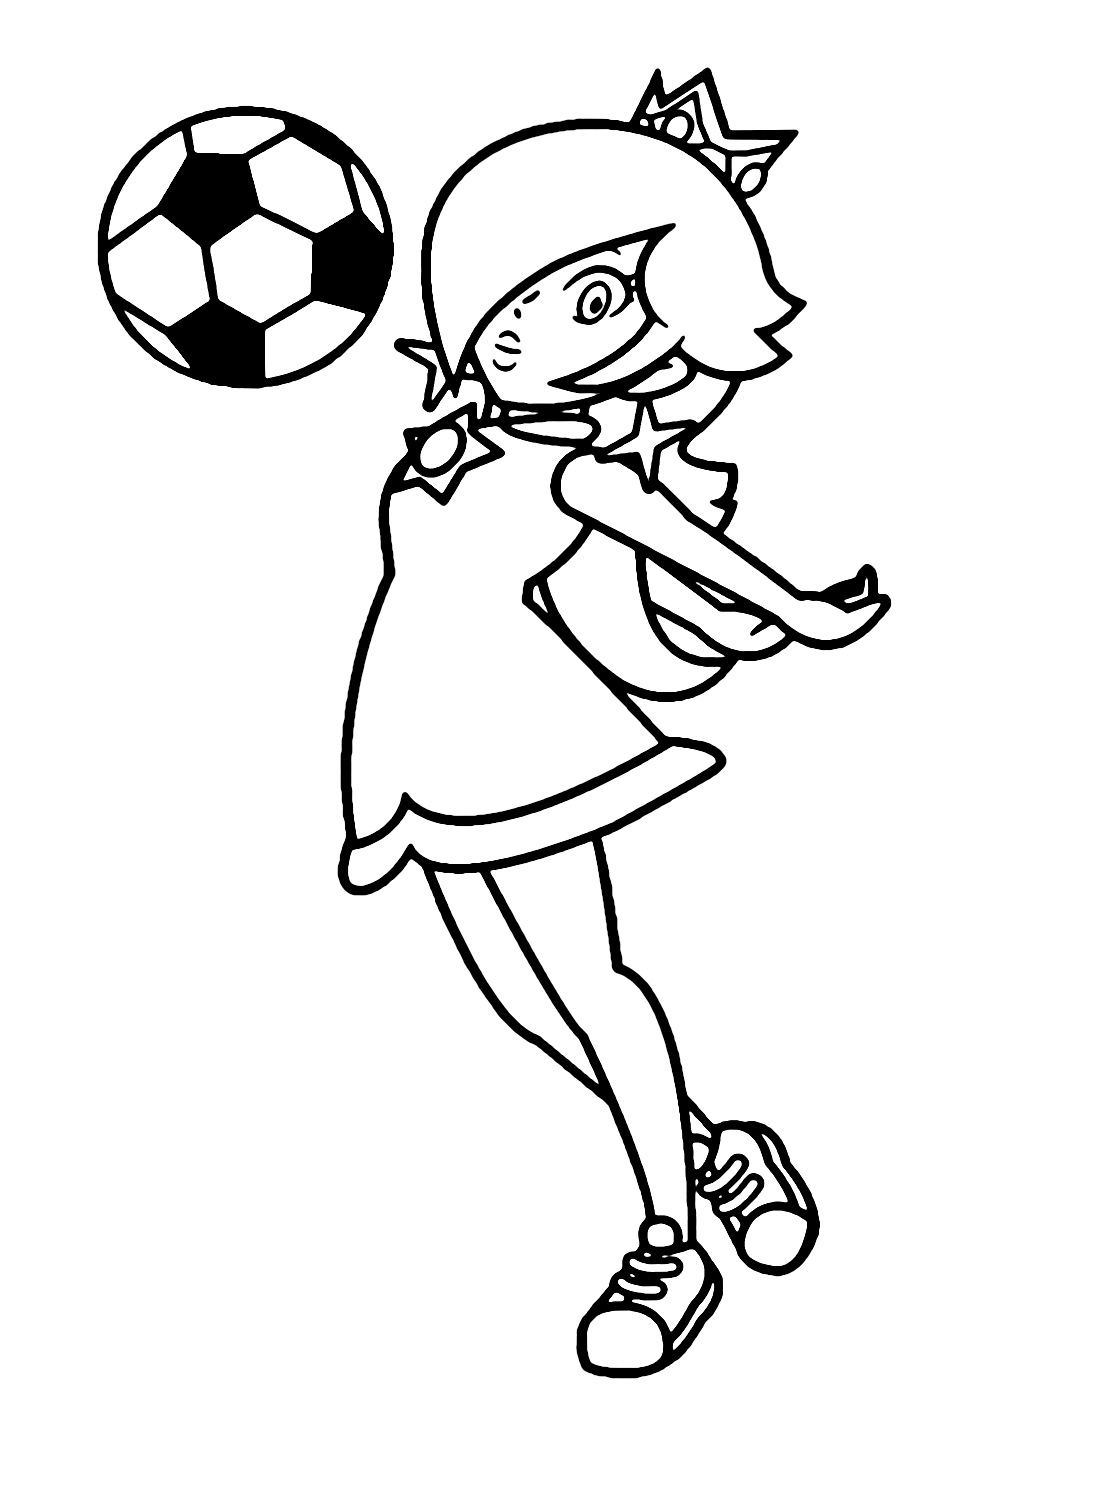 Rosalina playing Soccer Coloring Page